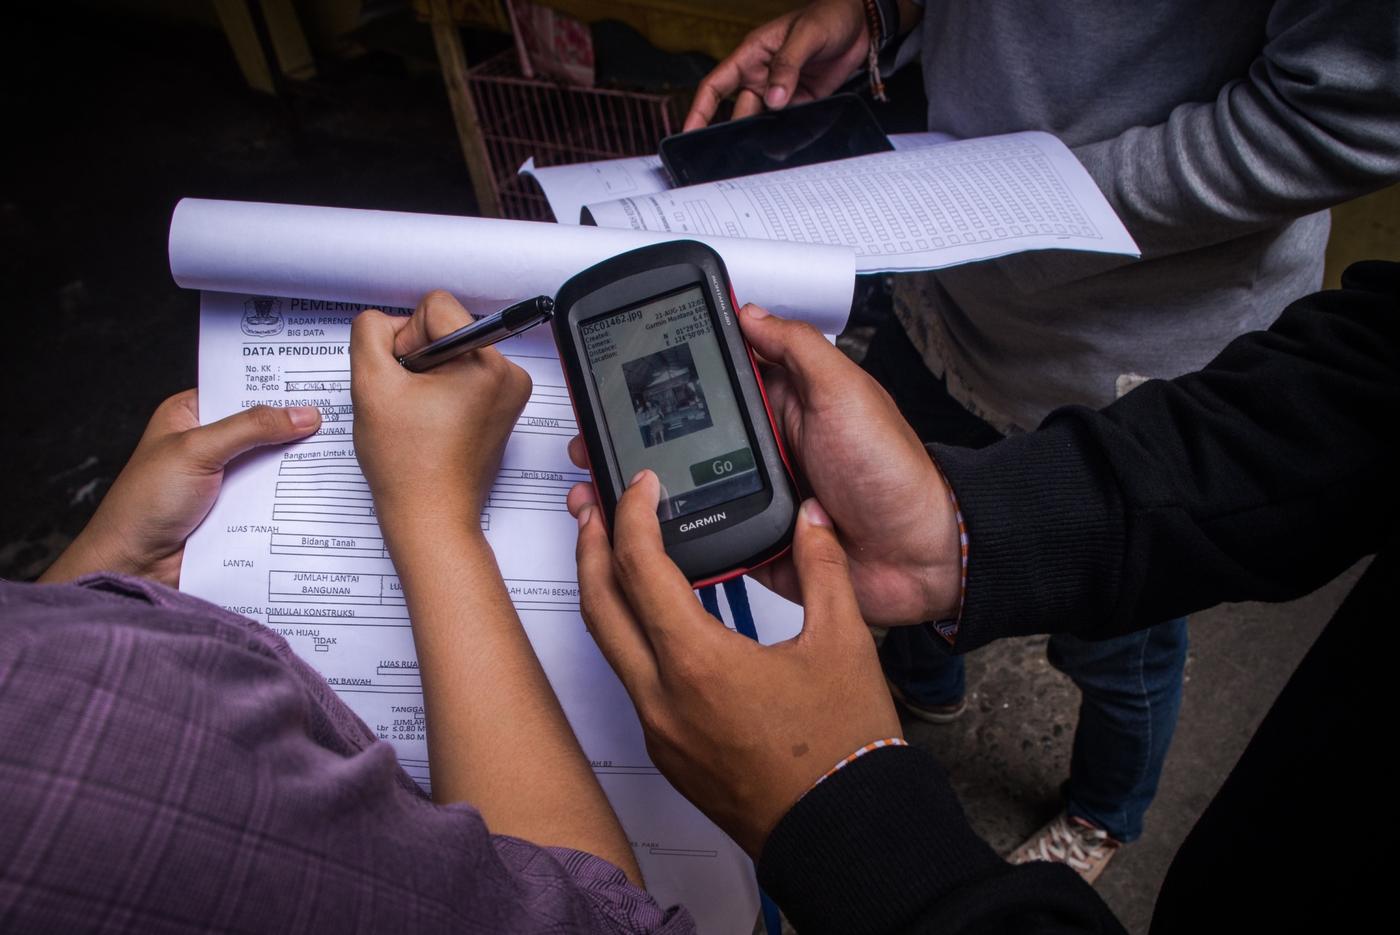 Pemerintah Kota Manado mengerahkan program KKN Mahasiswa untuk membantu Lurah dan Kepala Lingkungan dalam mengumpulkan data. Mereka mendatangi rumah warga satu per satu untuk mencatat informasi kependudukan yang diperlukan. Foto: Adwit B. Pramono/Yayasan BaKTI